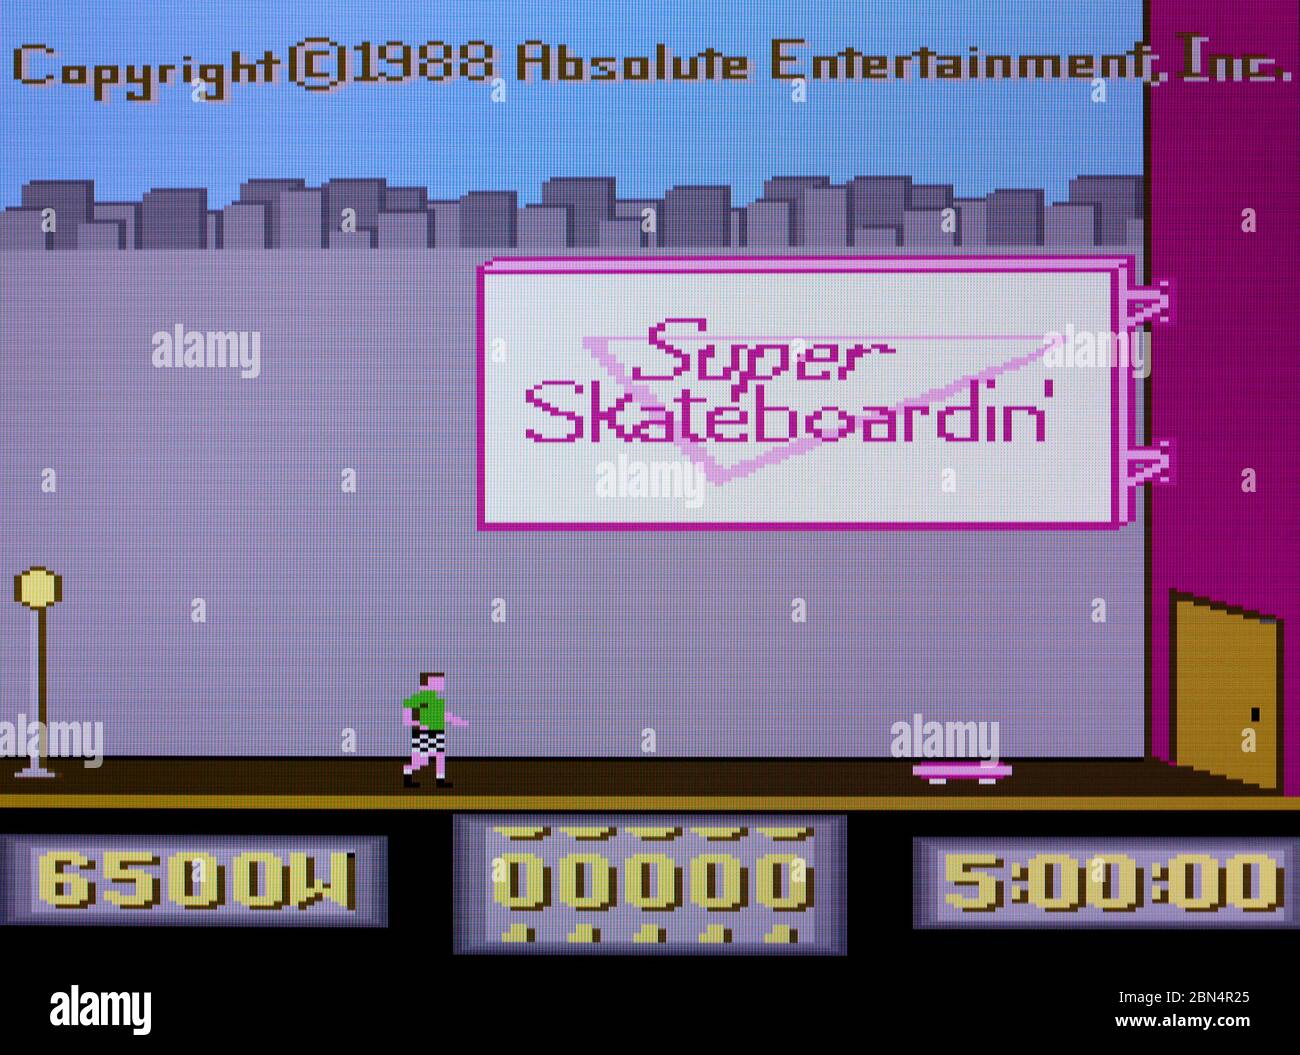 Super Skateboardin' - Atari 7800 Videgame Stock Photo